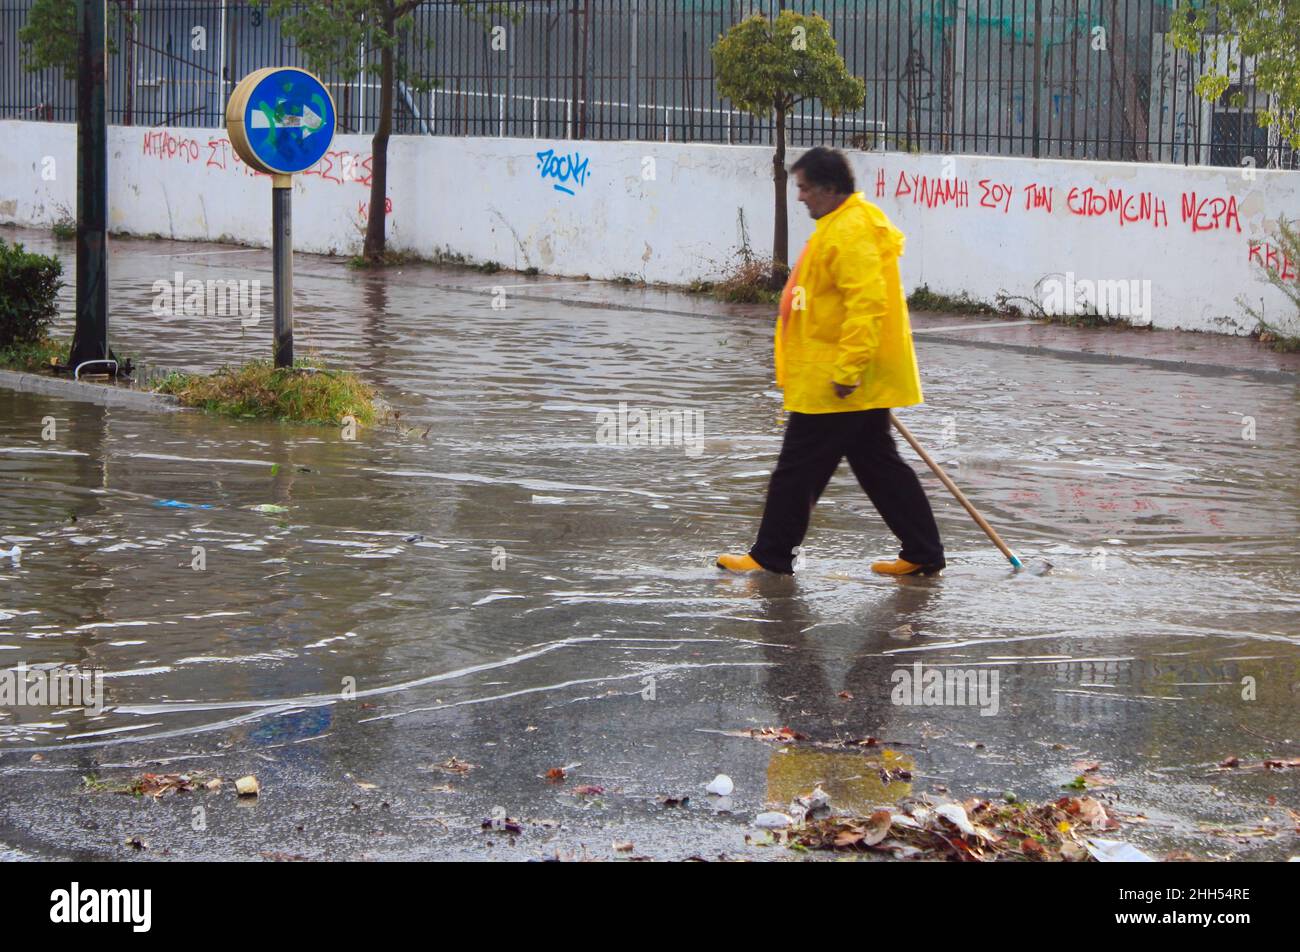 Überflutete Straße nach starken Regenfällen - Spata, Attica, Griechenland, Oktober 31 2019 Stockfoto